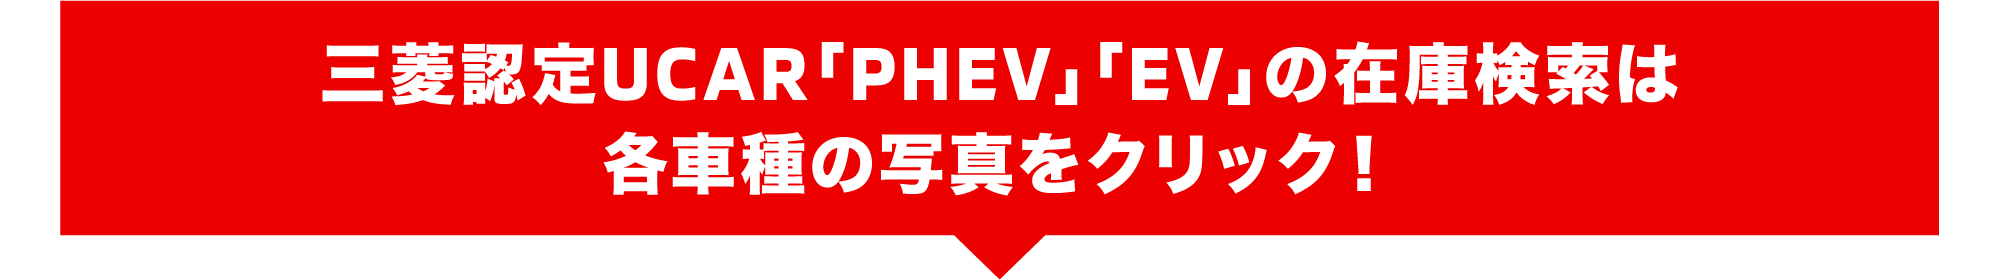 三菱認定UCAR「PHEV」「EV」ラインアップ